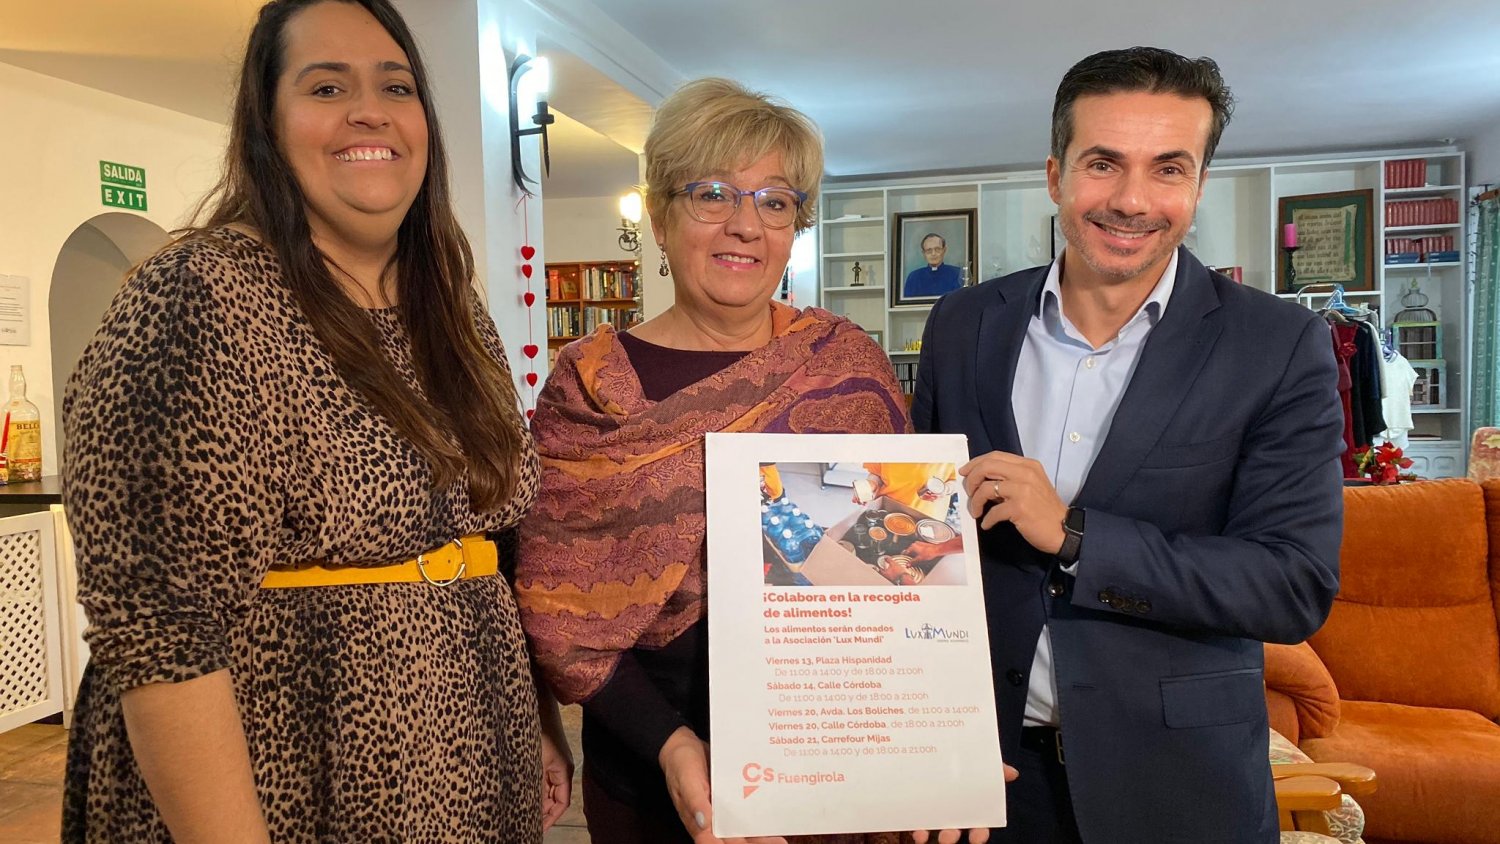 Ciudadanos Fuengirola organiza una campaña de recogida de alimentos para los dos próximos fines de semanas